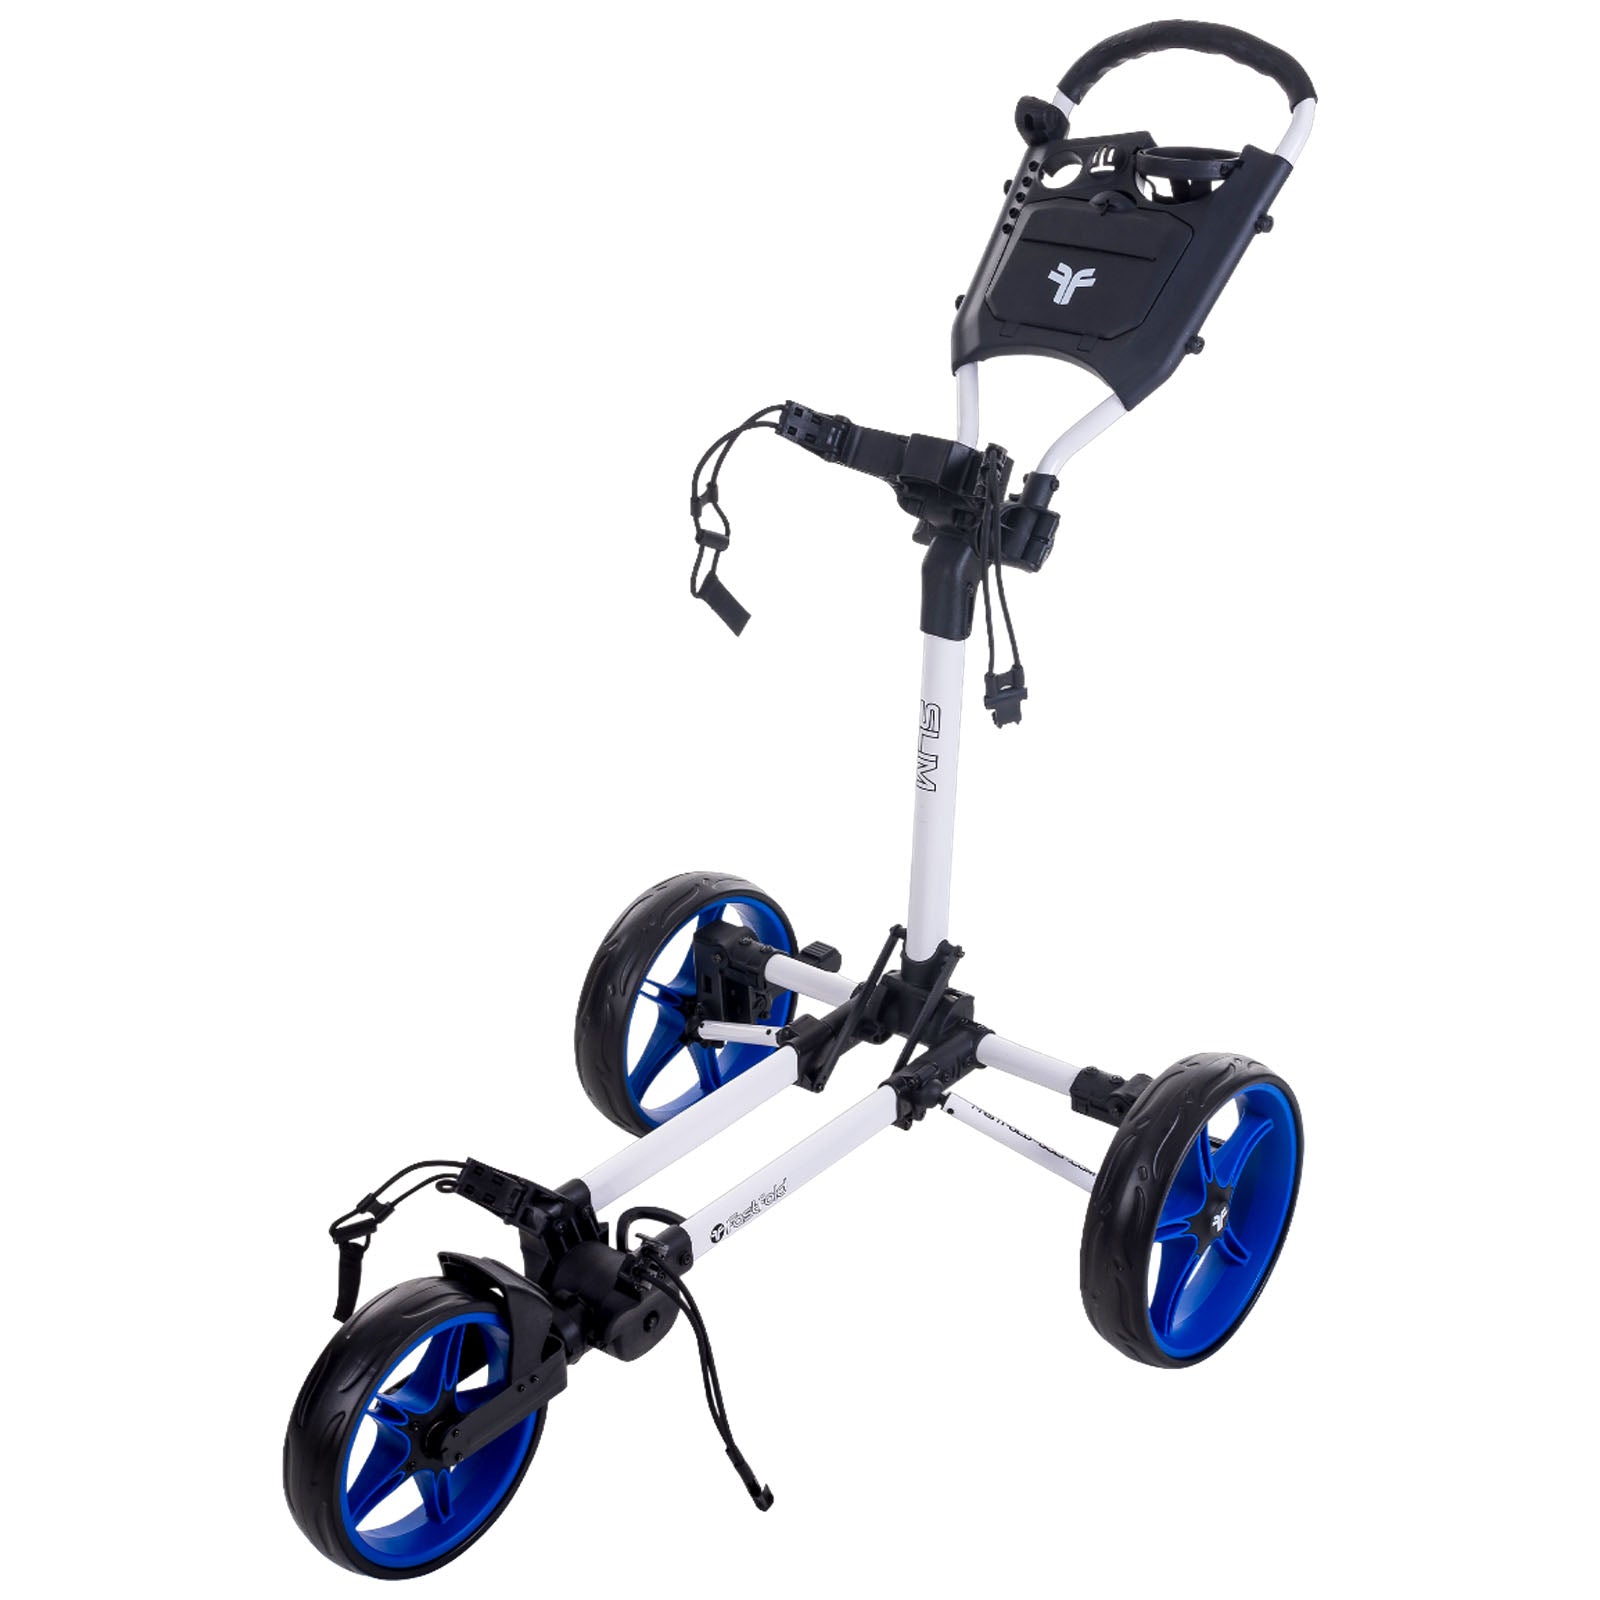 FastFold Slim 3-Wheel Push Golf Trolley